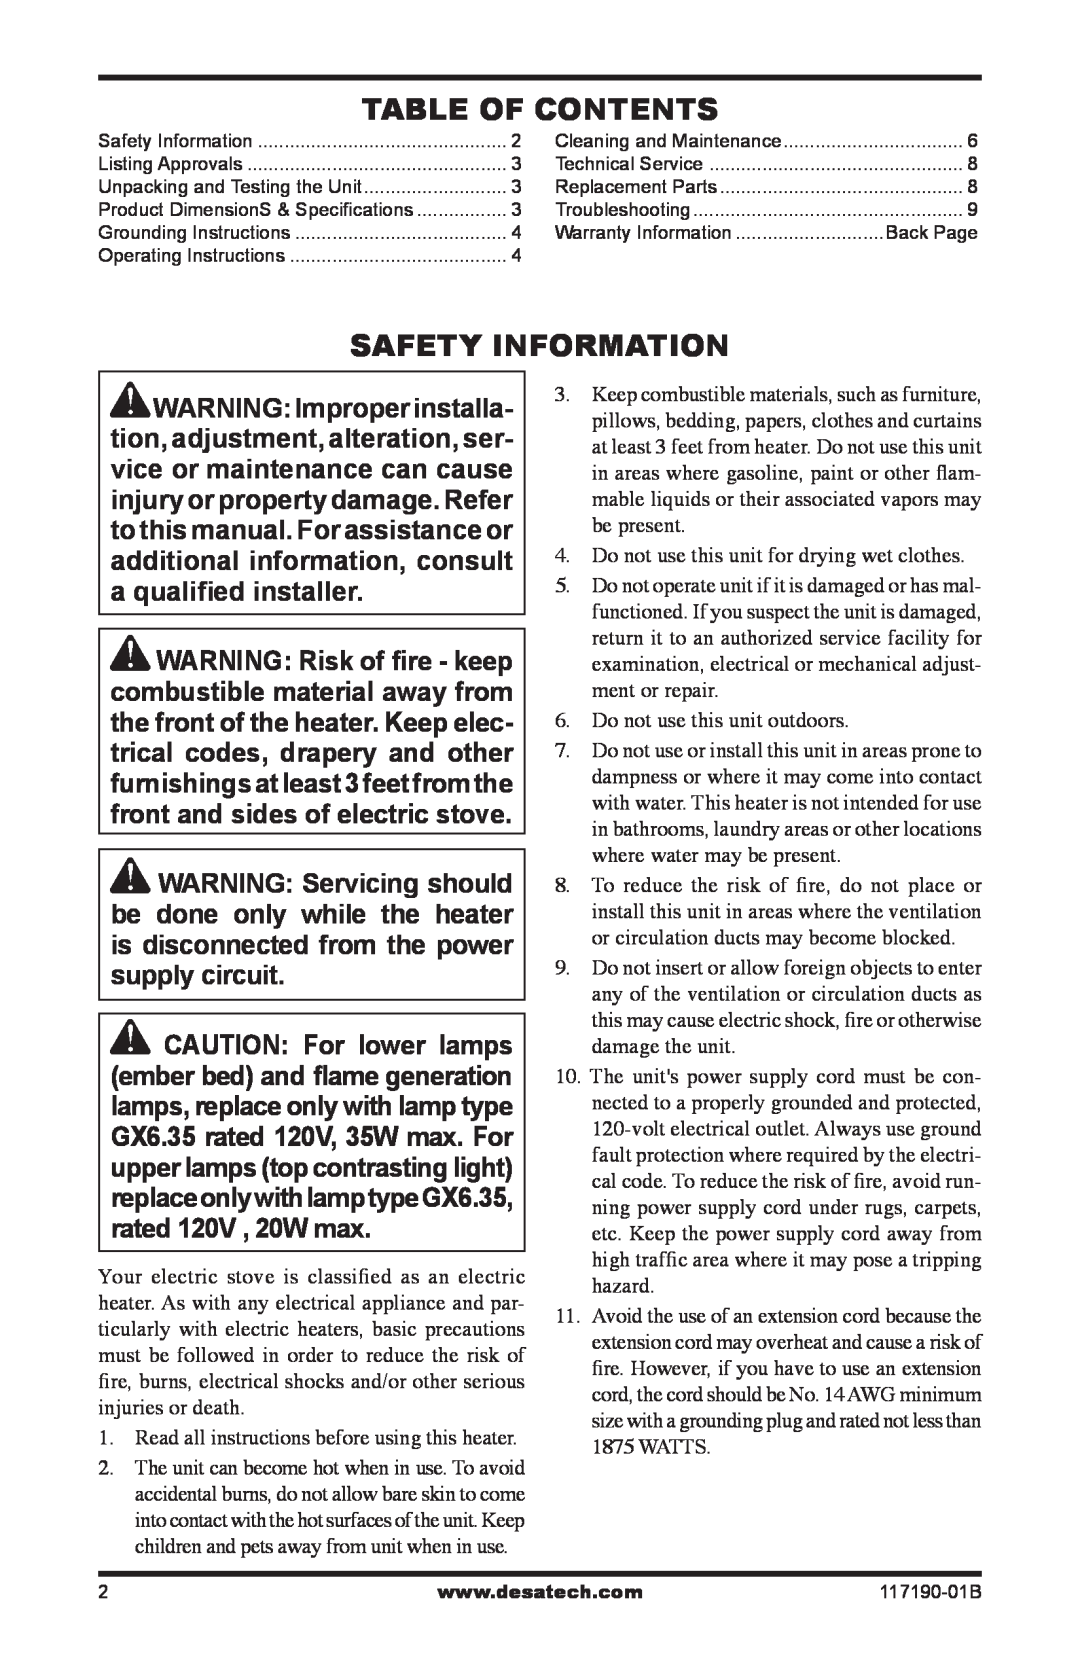 Desa CGESBMR, VESBMR, VESBL operation manual Table Of Contents, Safety Information 